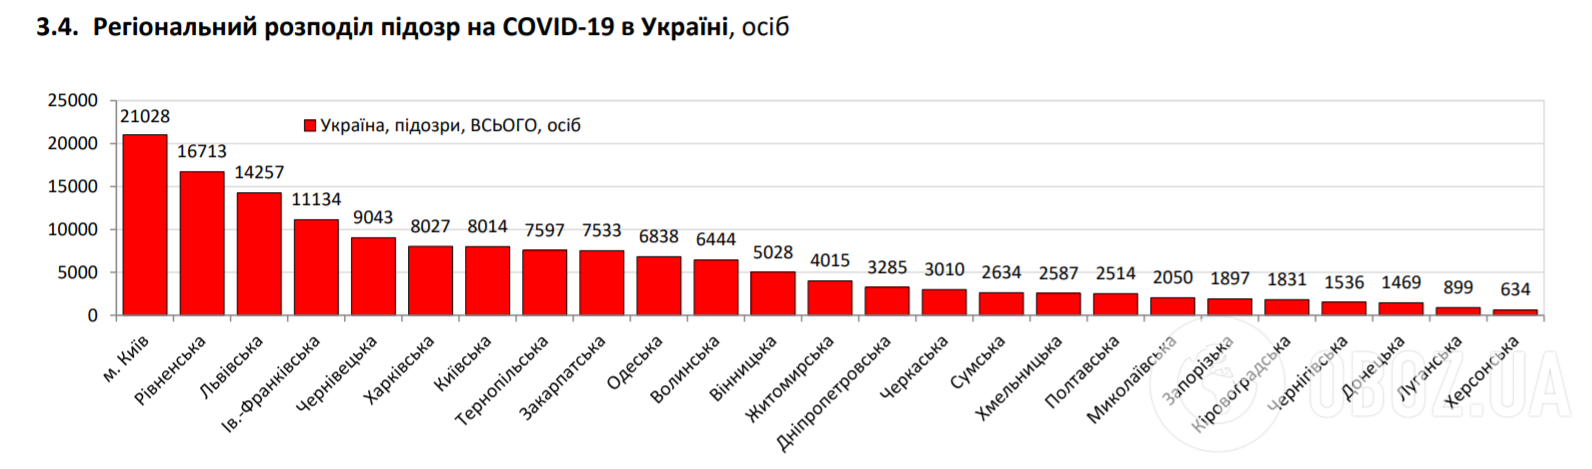 Региональное распределение подозрений на COVID-19 в Украине